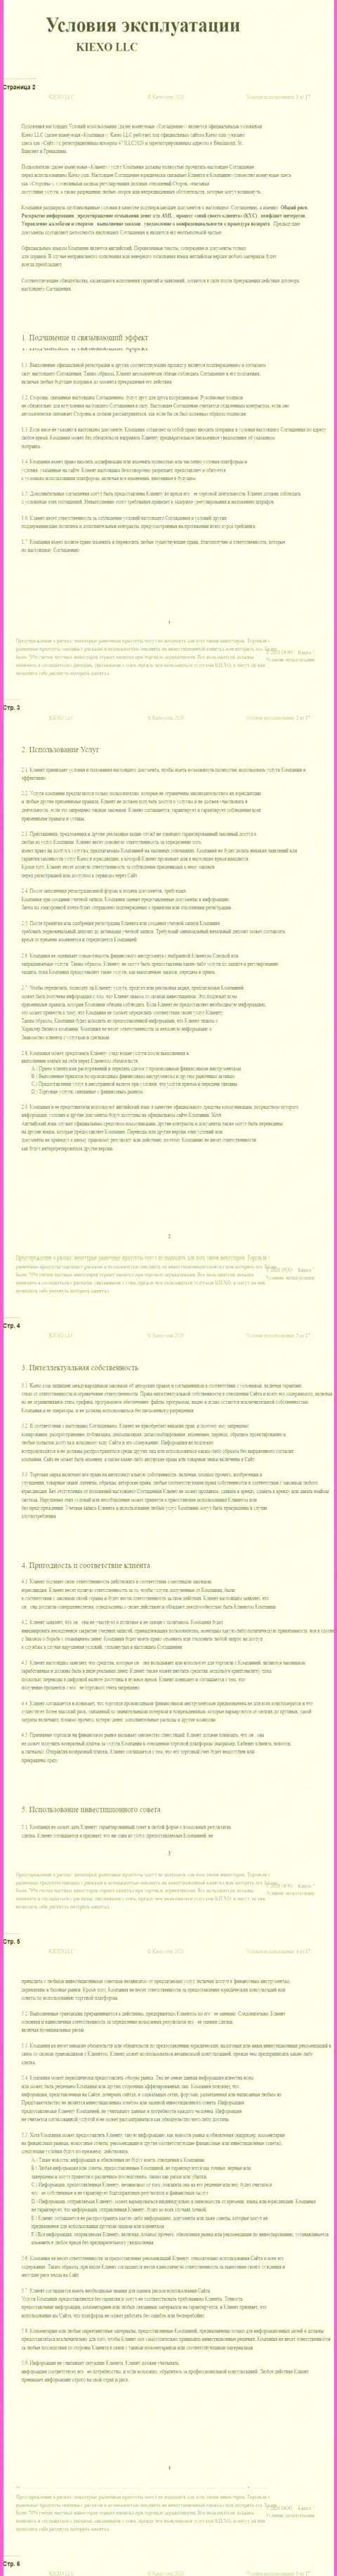 Пользовательское соглашение форекс брокерской компании Киехо ЛЛК (часть первая)